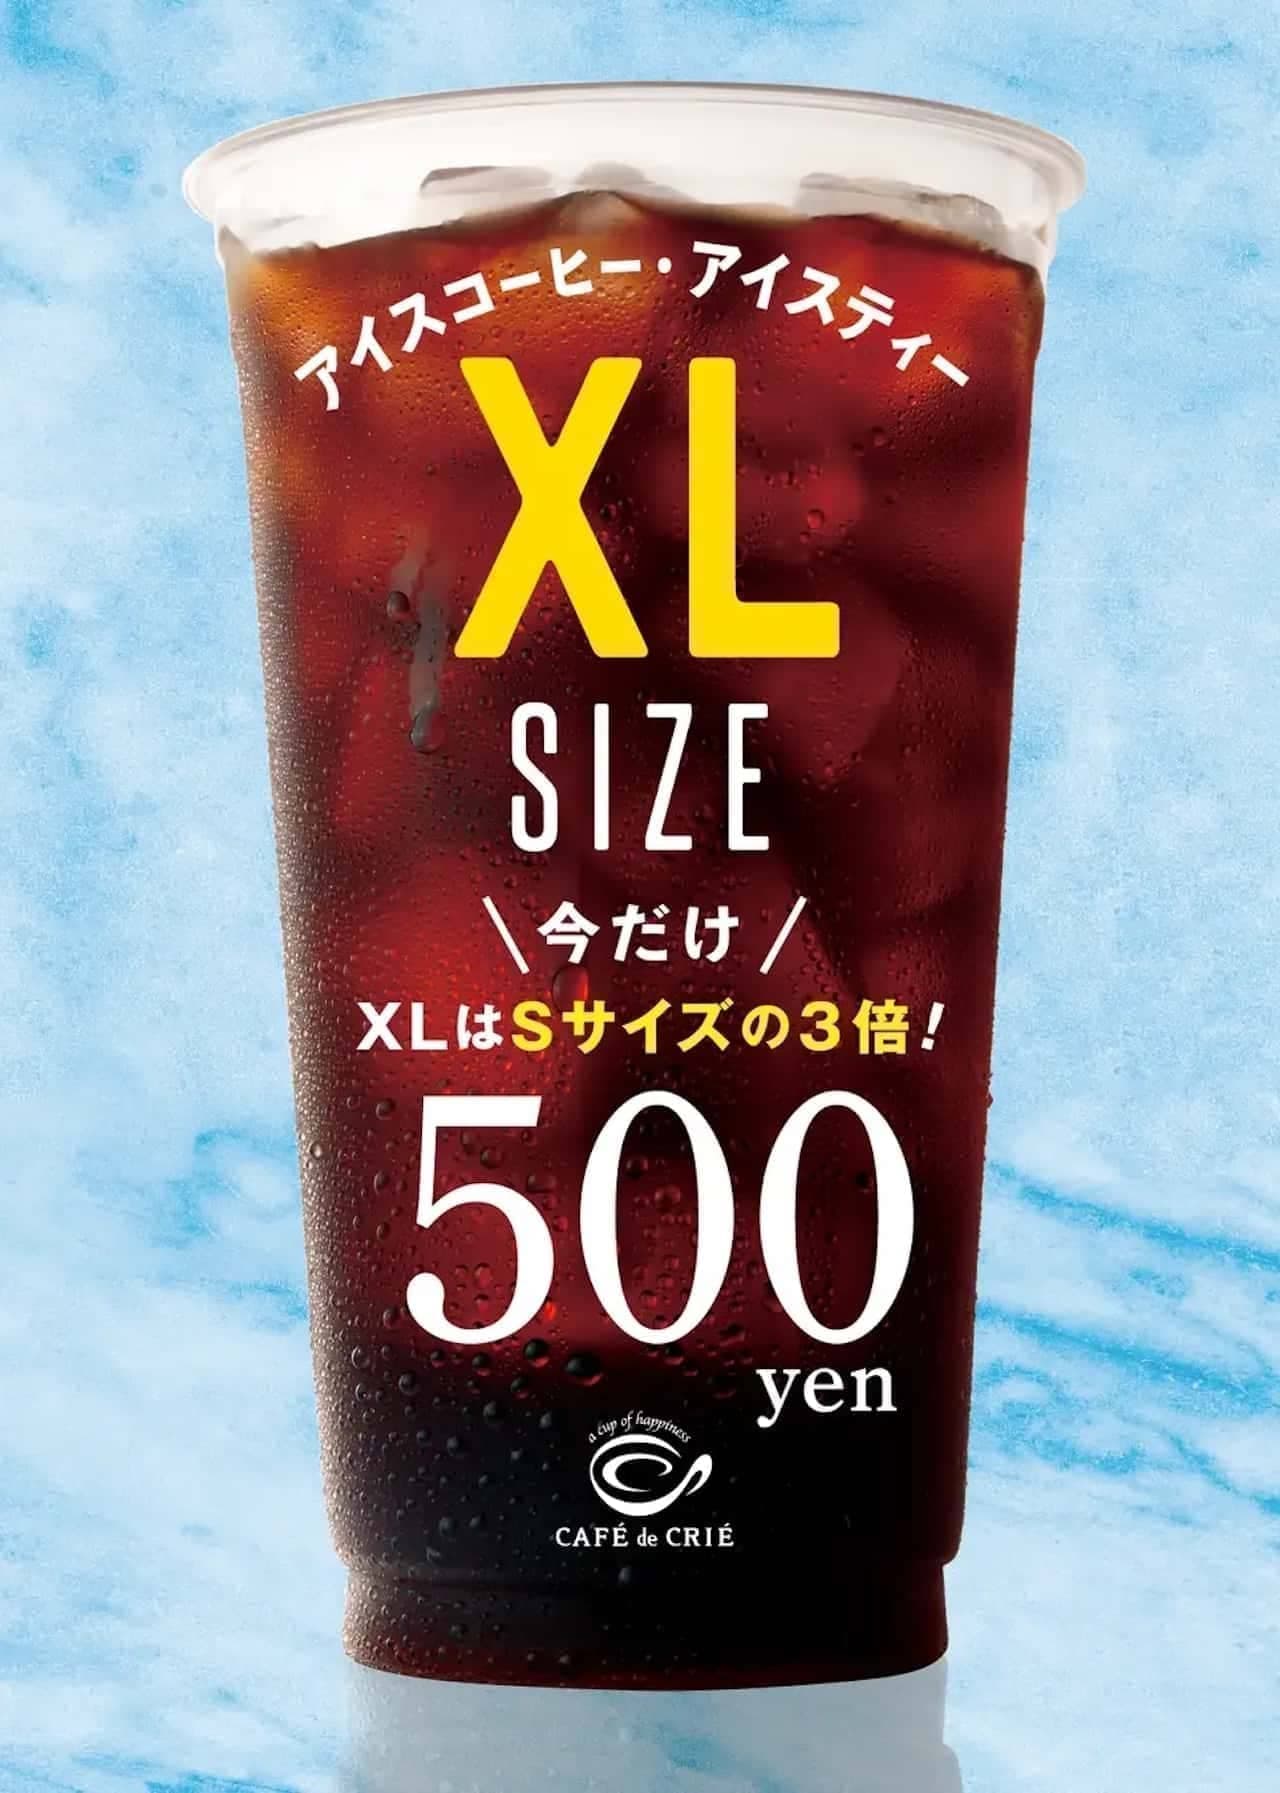 Cafe de Crié "Iced Coffee/Iced Tea XL Size